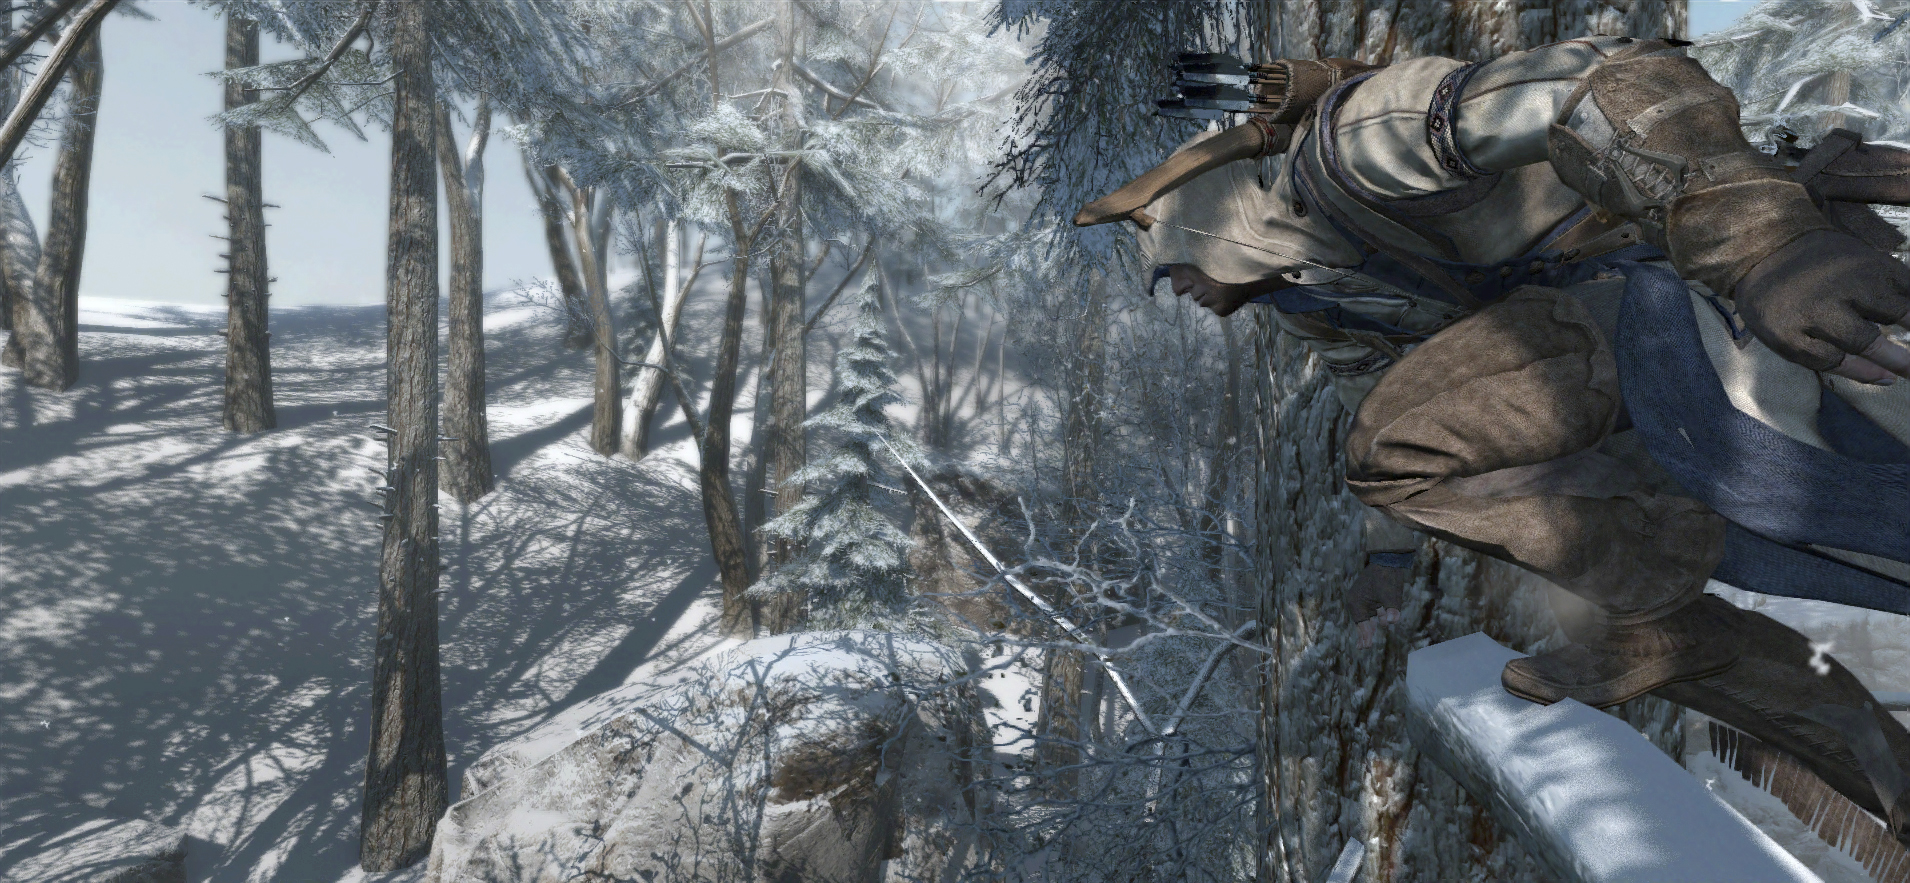 Immagine pubblicata in relazione al seguente contenuto: Assassin's Creed III Screenshots: Connor corre nei boschi innevati | Nome immagine: news17020_5.jpg